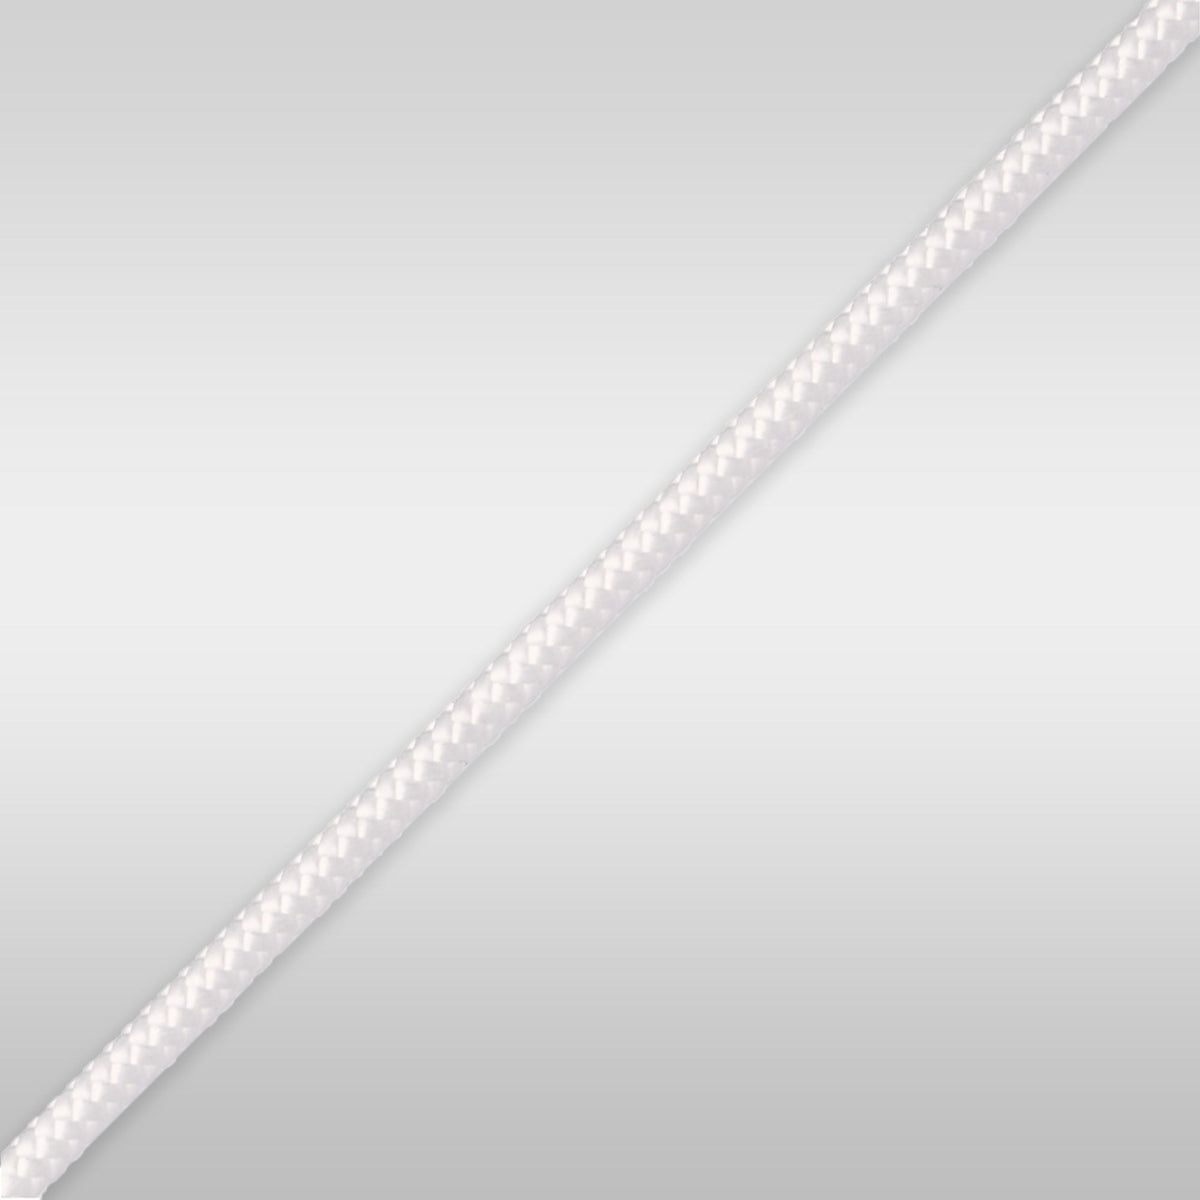 Tampen - Marlow Formuline Dyneema® 3,8mm Rope Marlow 